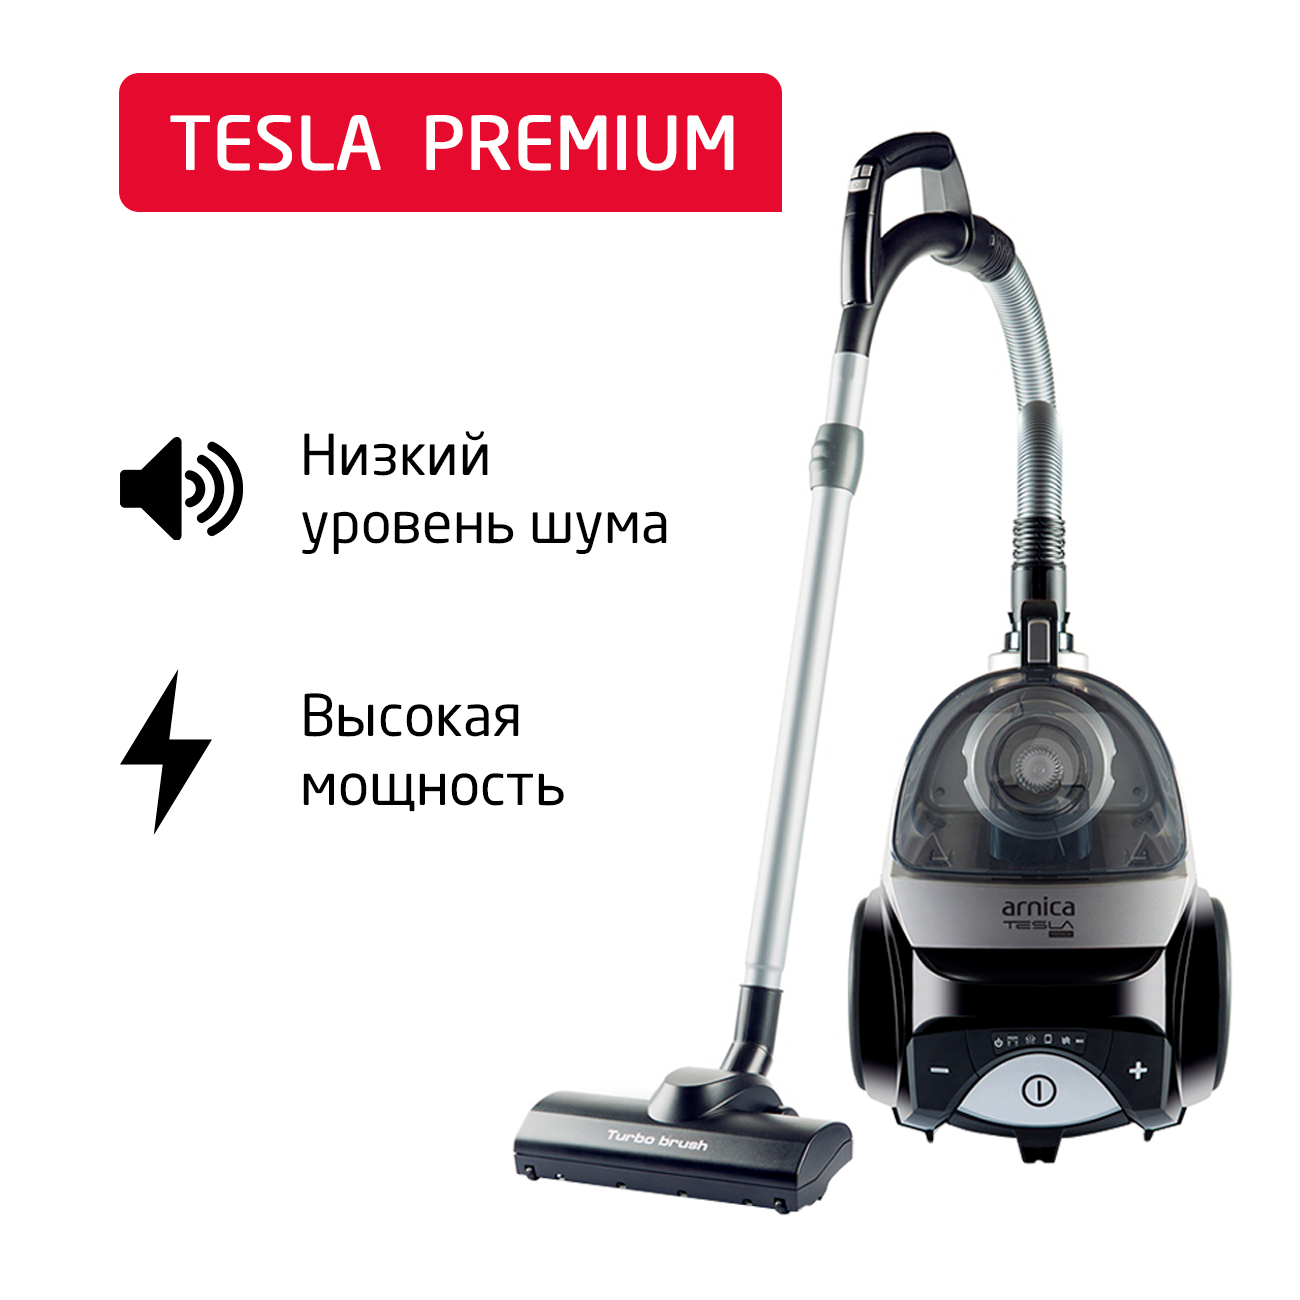 Пылесос ARNICA Tesla Premium серебристый, черный пылесос arnica solara et13450 серебристый